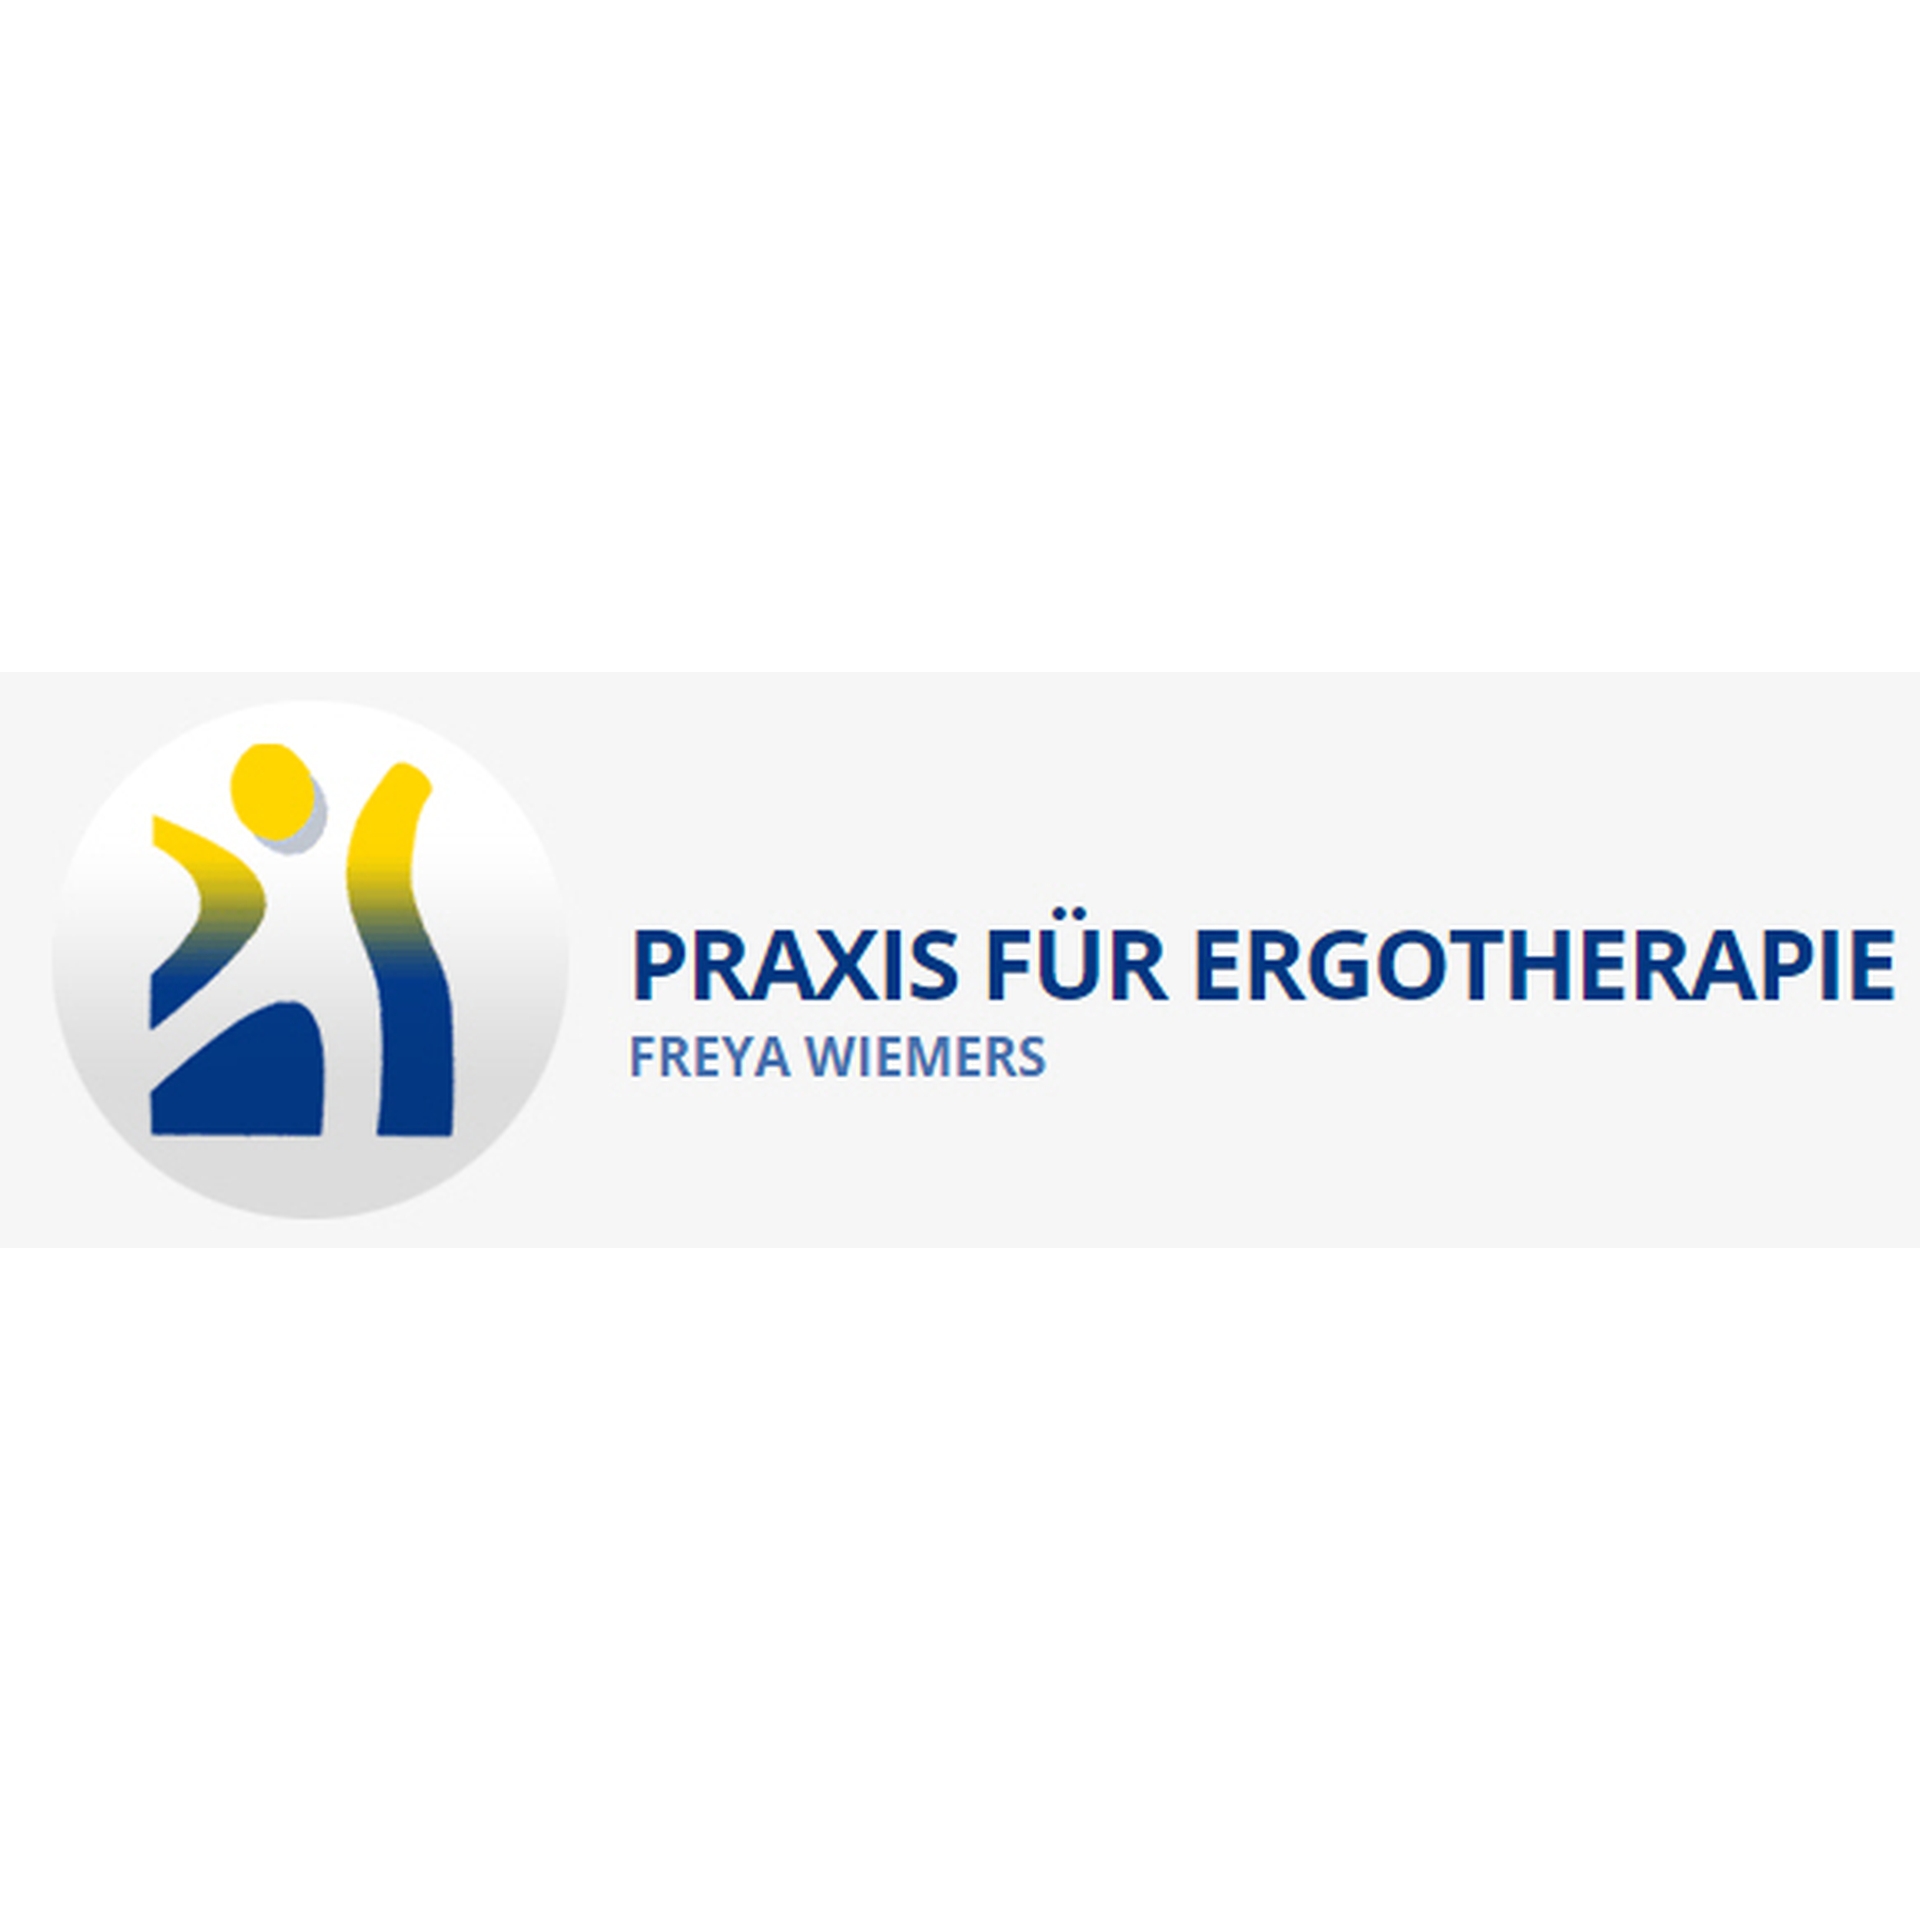 Praxis für Ergotherapie Freya Wiemers in Göttingen - Logo